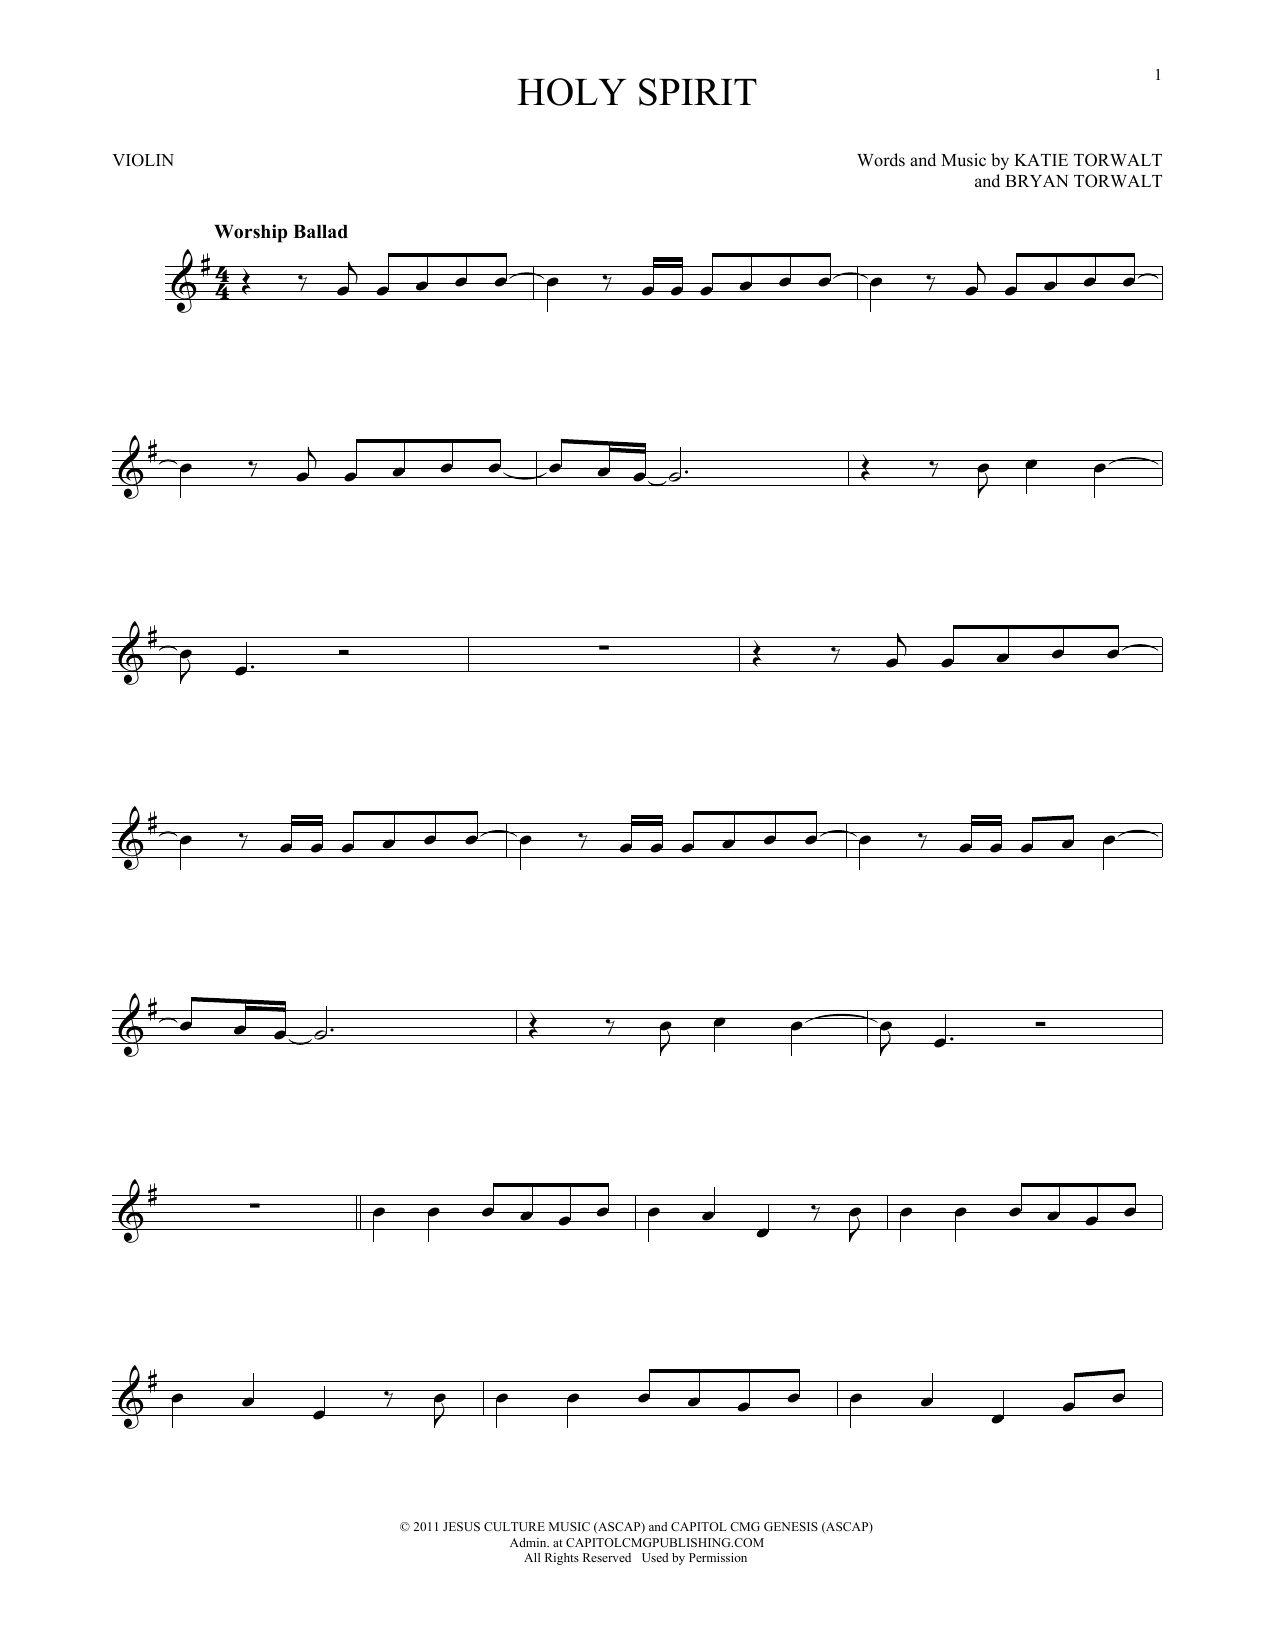 Bryan Torwalt Holy Spirit Sheet Music Notes & Chords for Ukulele - Download or Print PDF